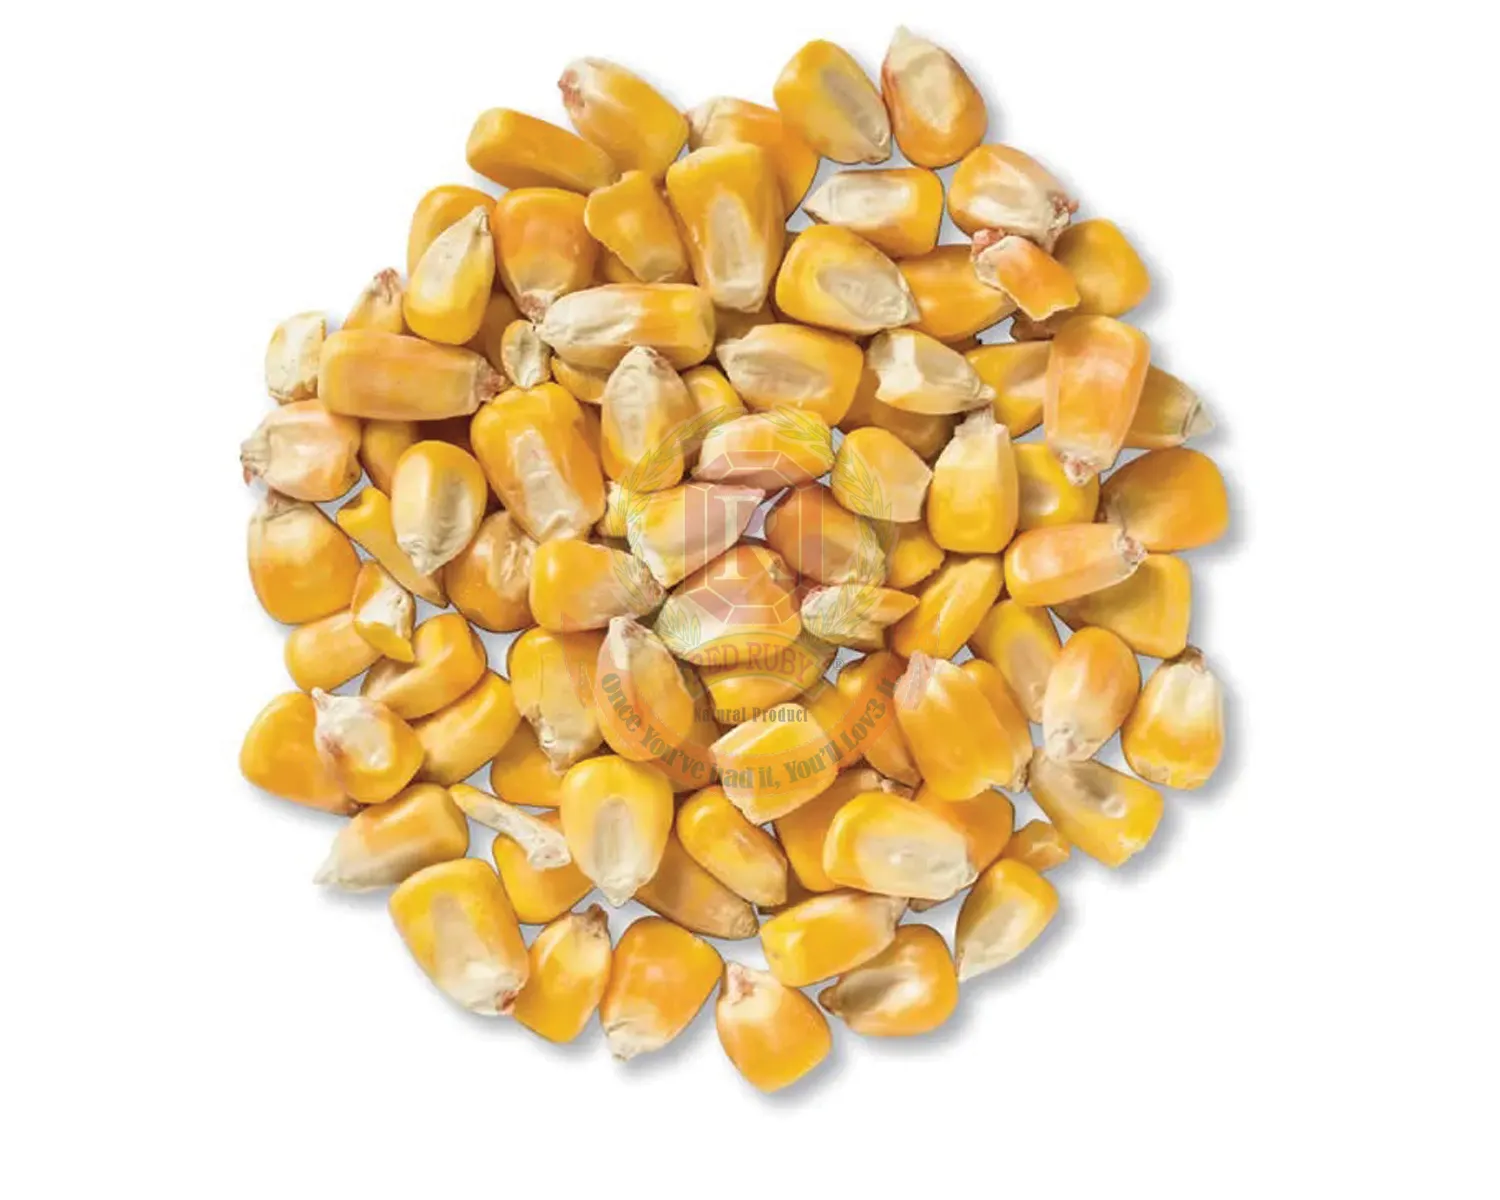 Yellow Corn/Maize